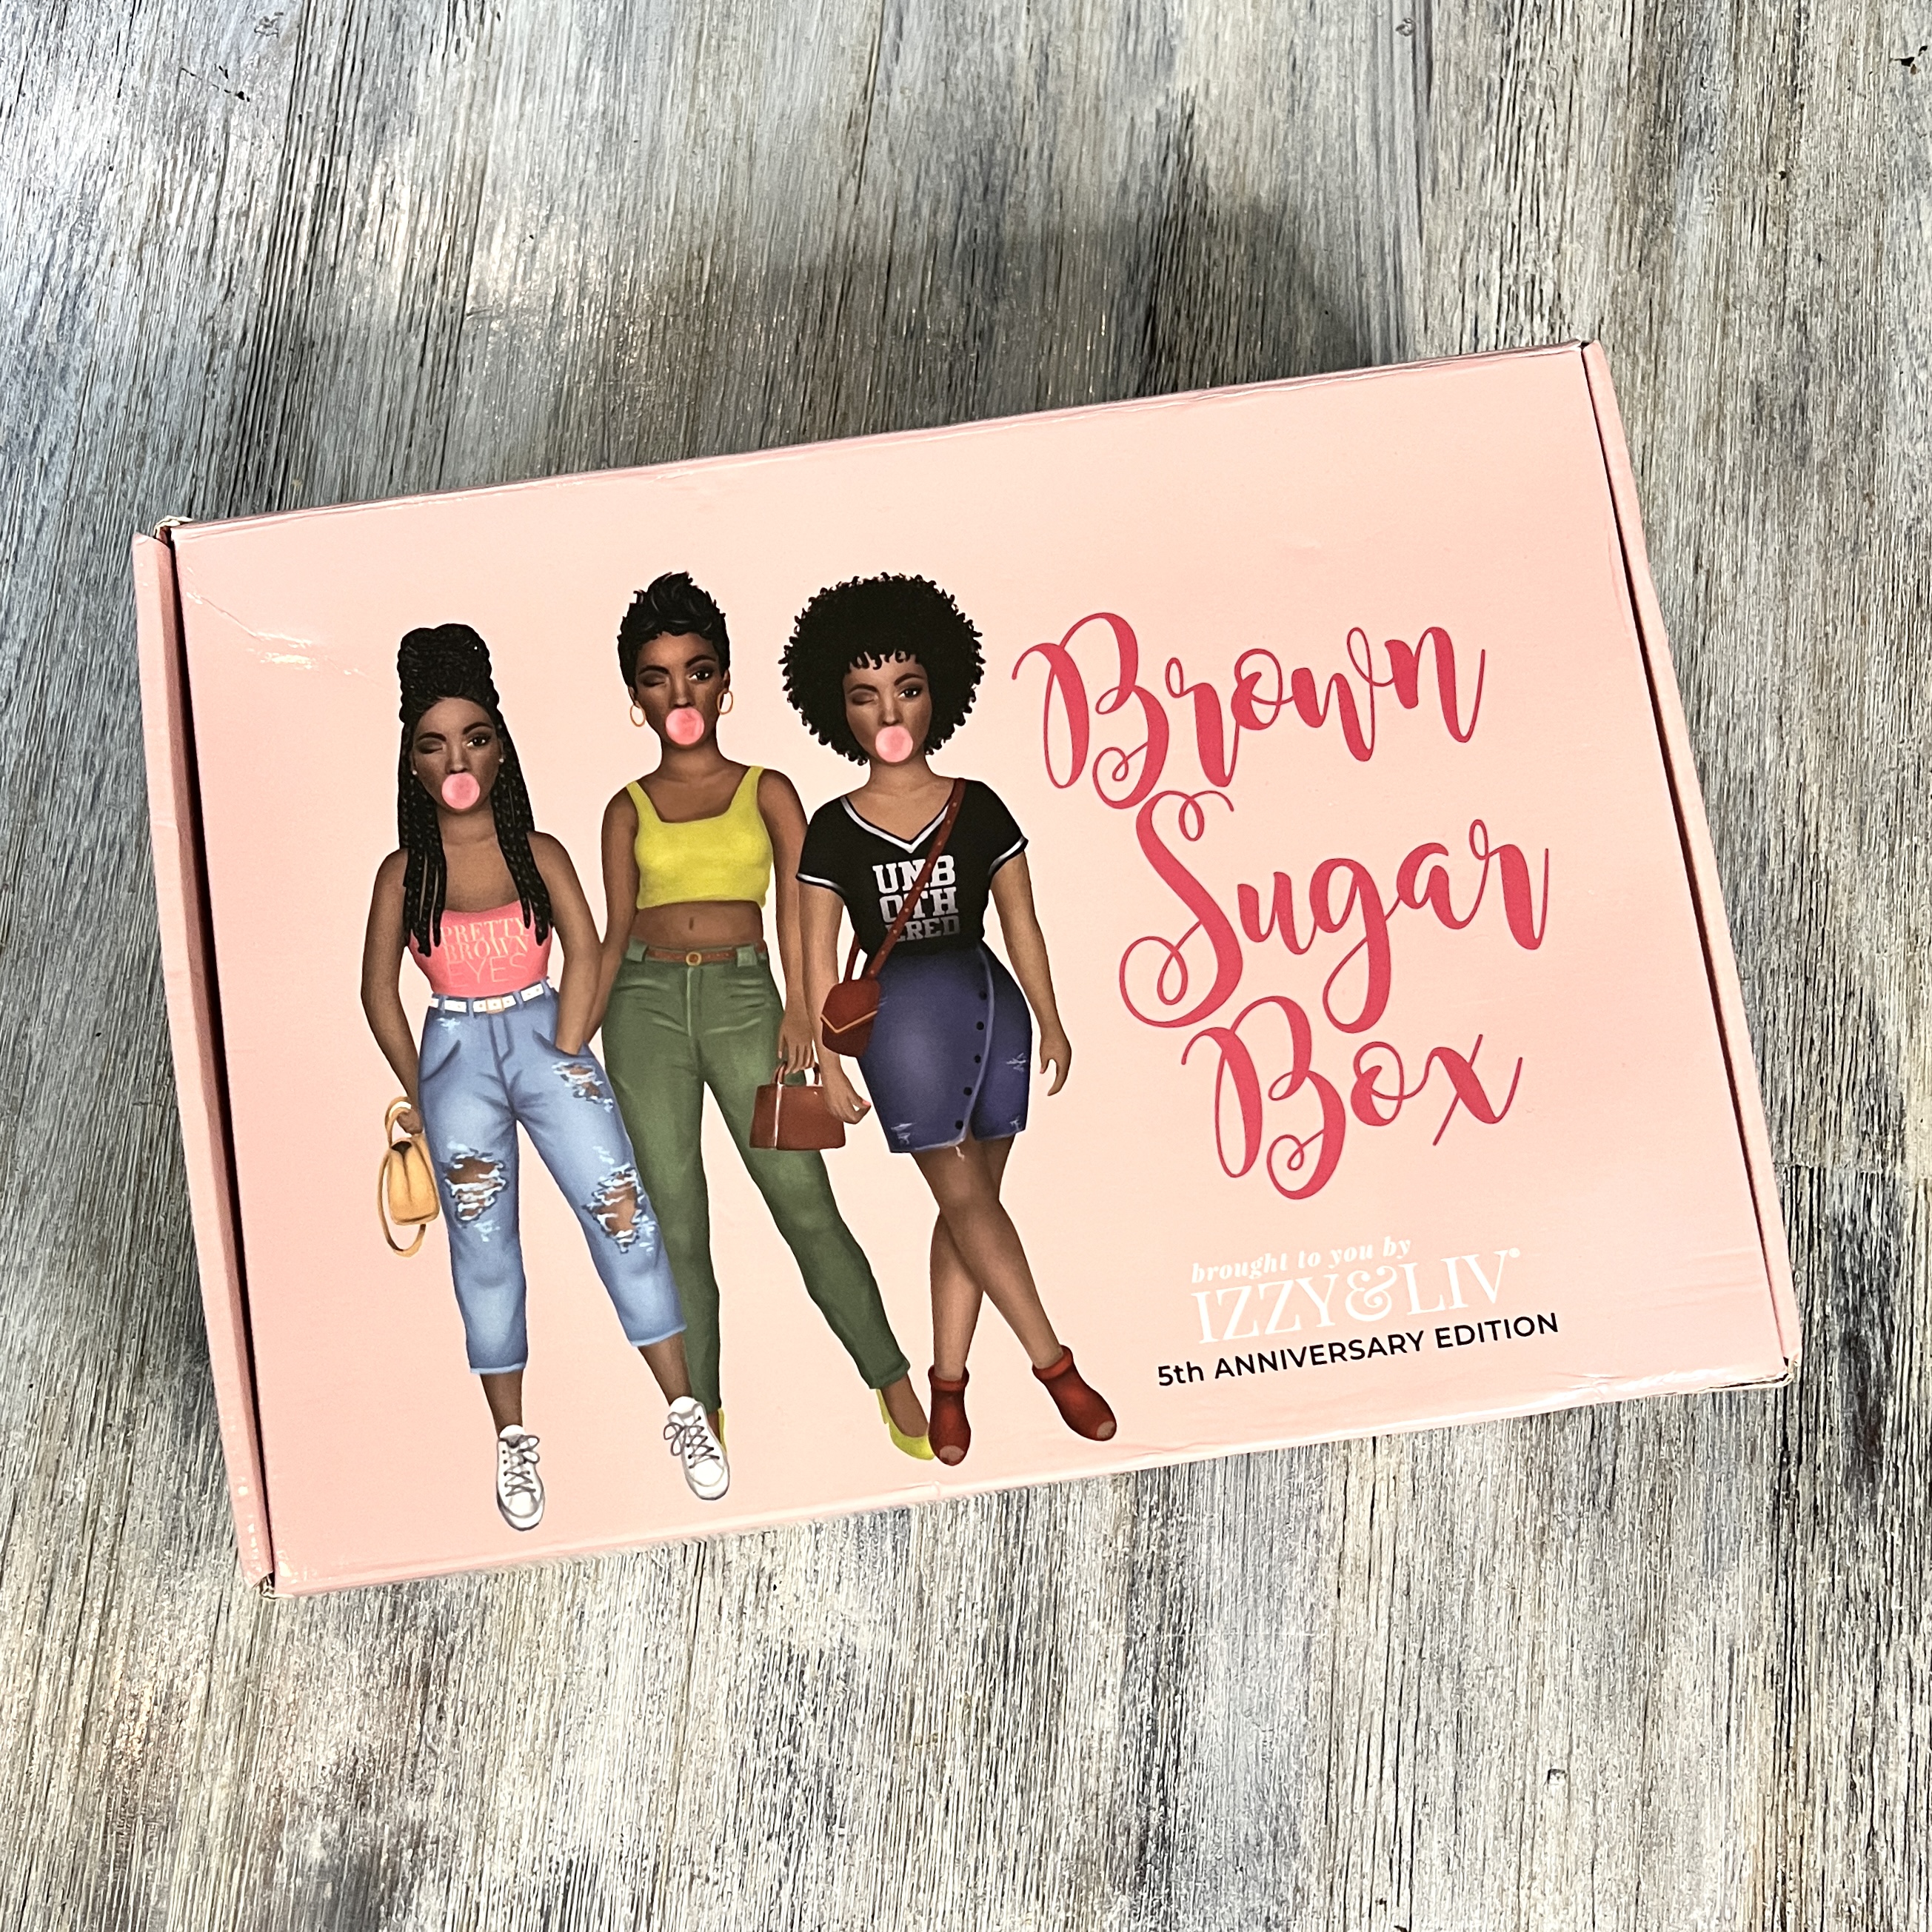 Box for Brown Sugar Box April 2022